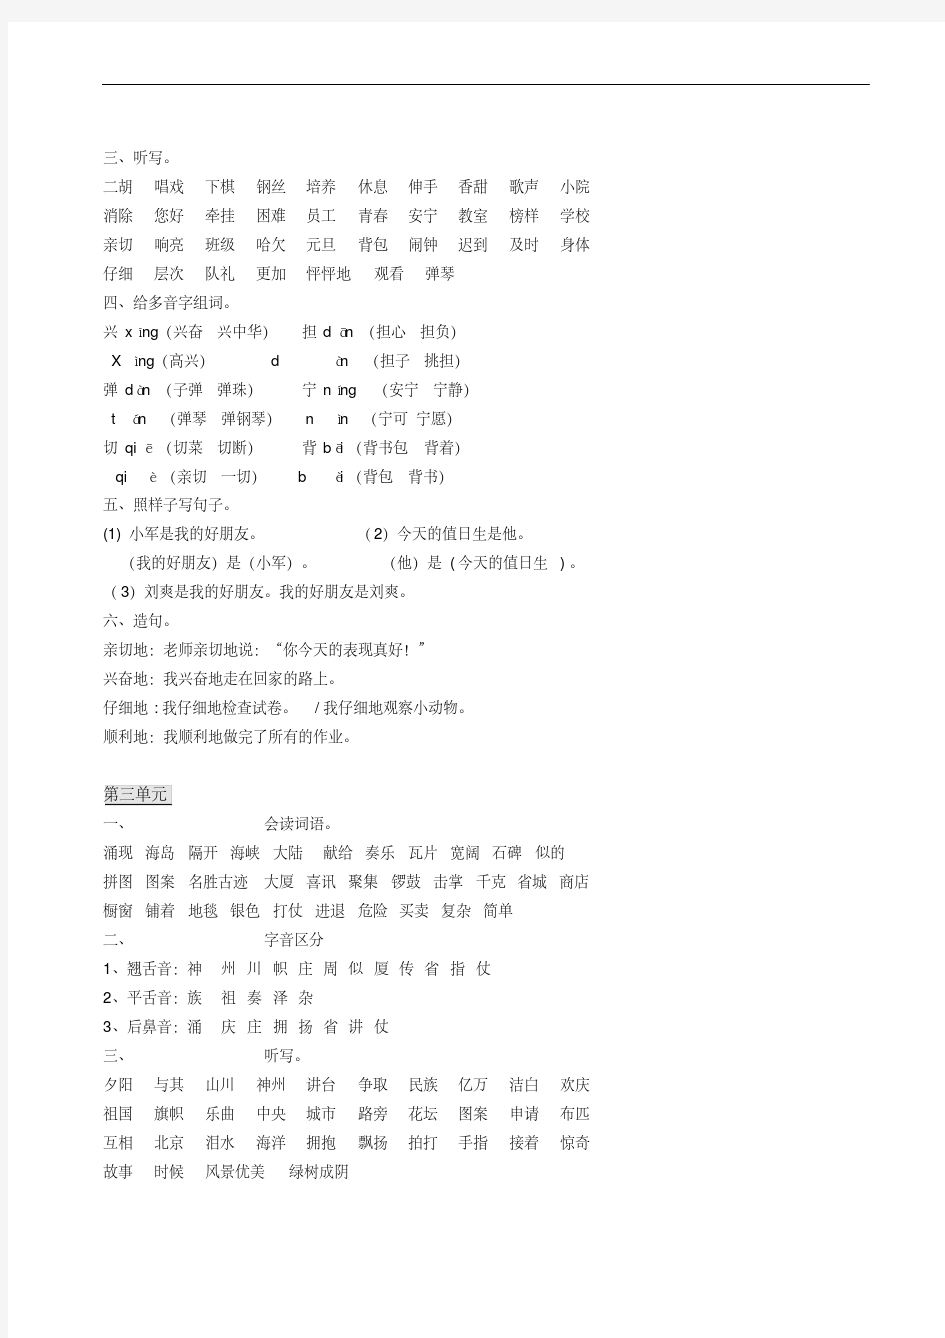 上海小学语文二年级上册复习资料总